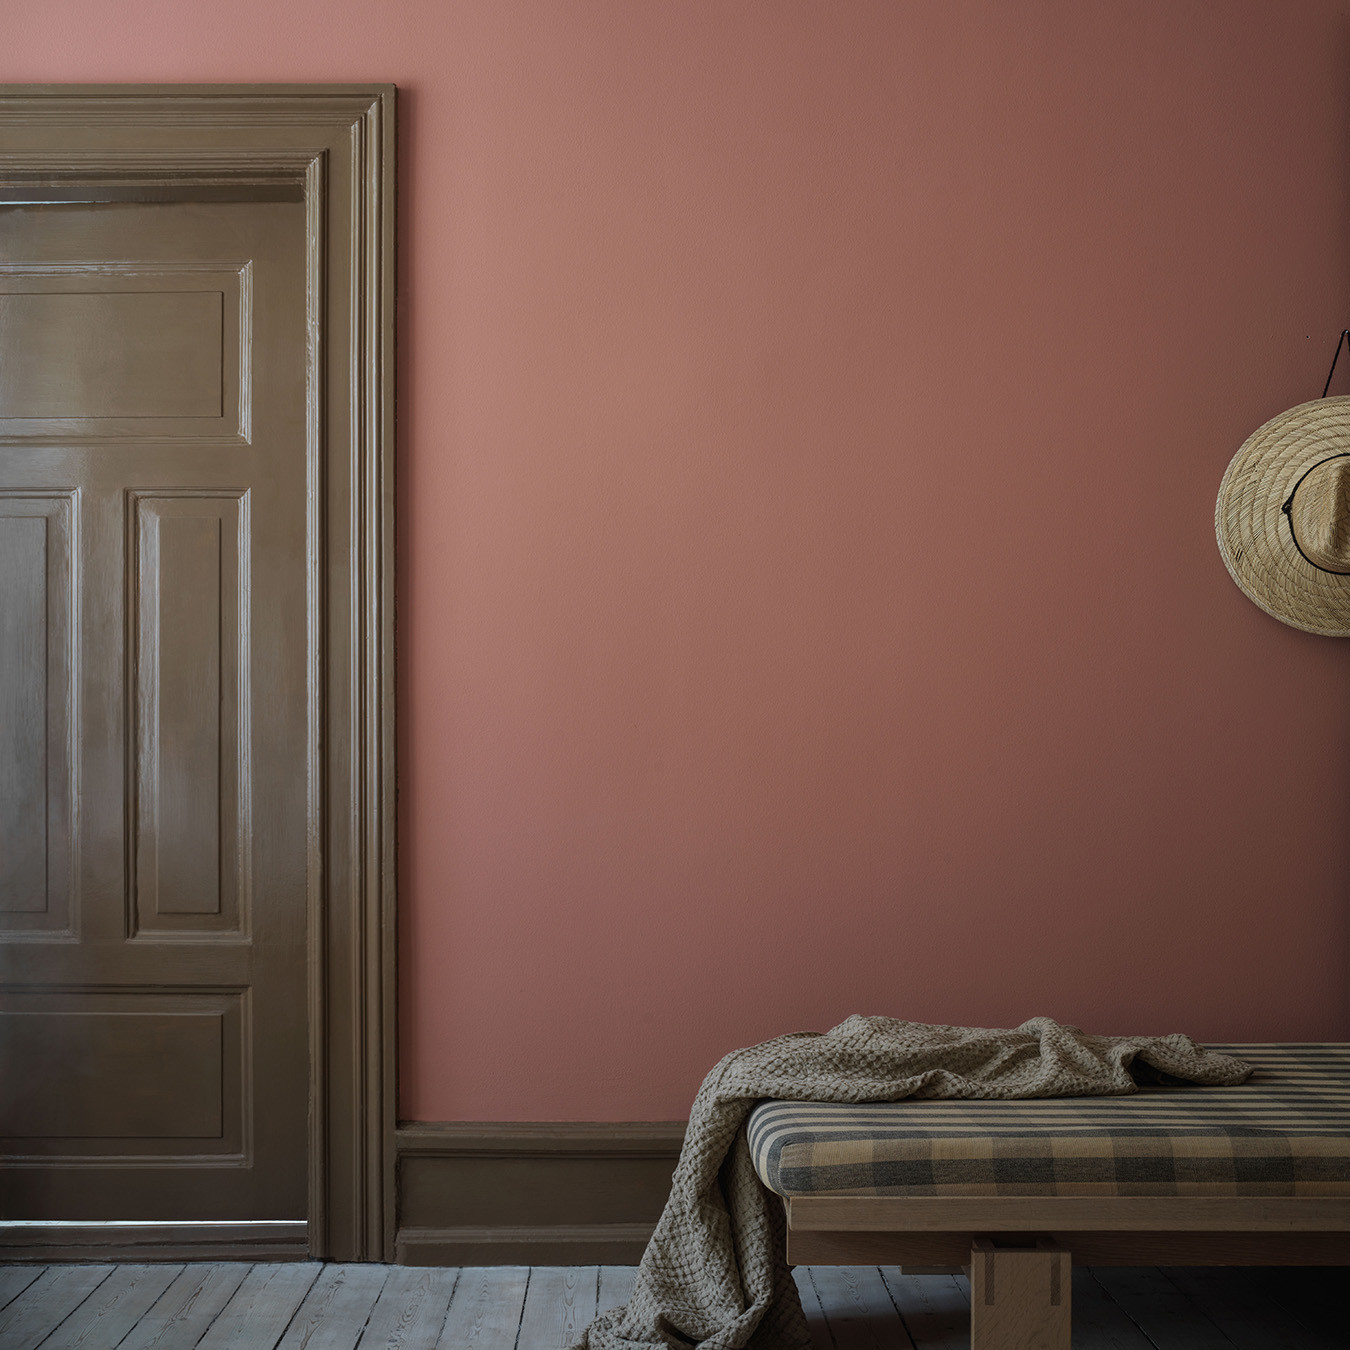 Ett rum har målats i en varm röd ton, kulör Bauhausröd medan snickerier och spegeldörr målats i en blank, brun färg, kulör Tall.